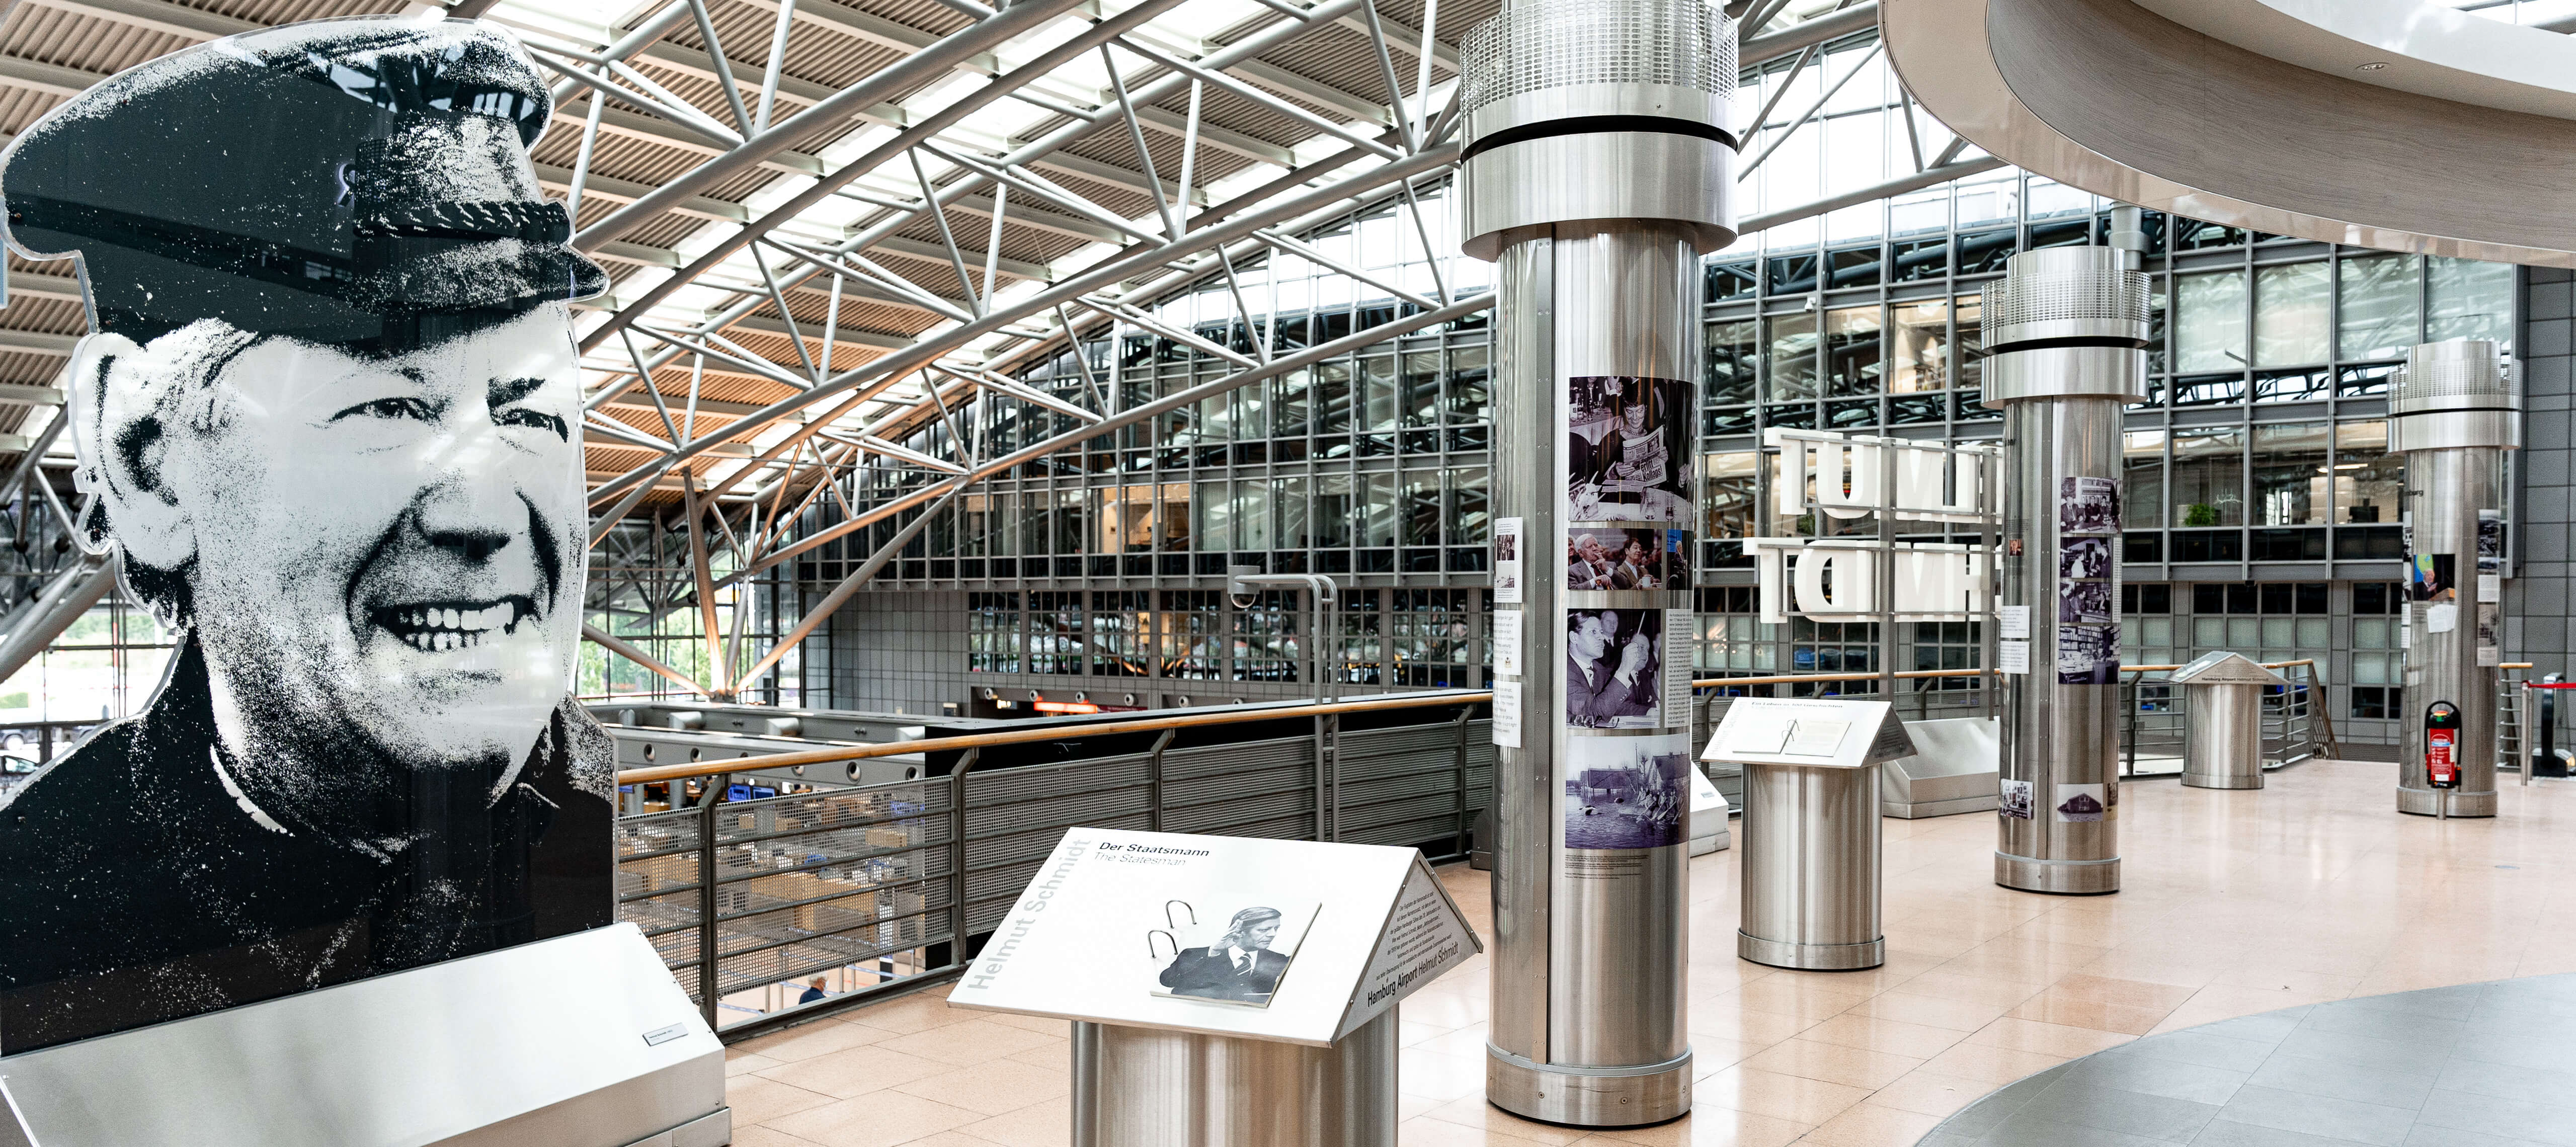 Räumlichkeiten des Hamburger Flughafens mit Ausstellungsmaterial zu Helmut Schmidt.